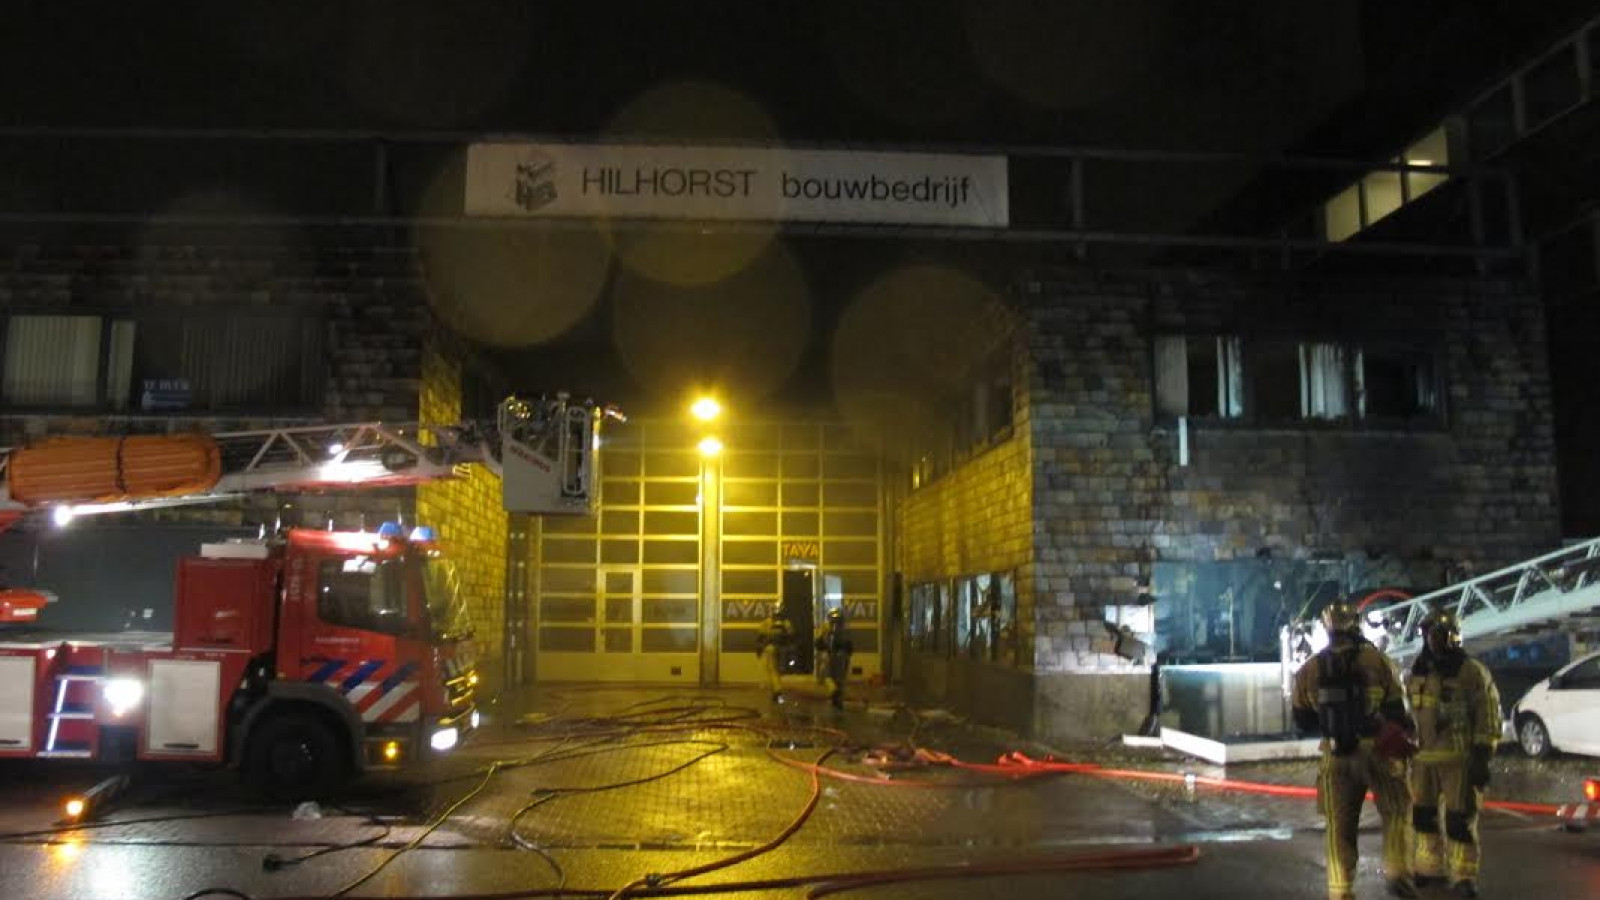 Autorijschool in Westpoort helemaal uitgebrand